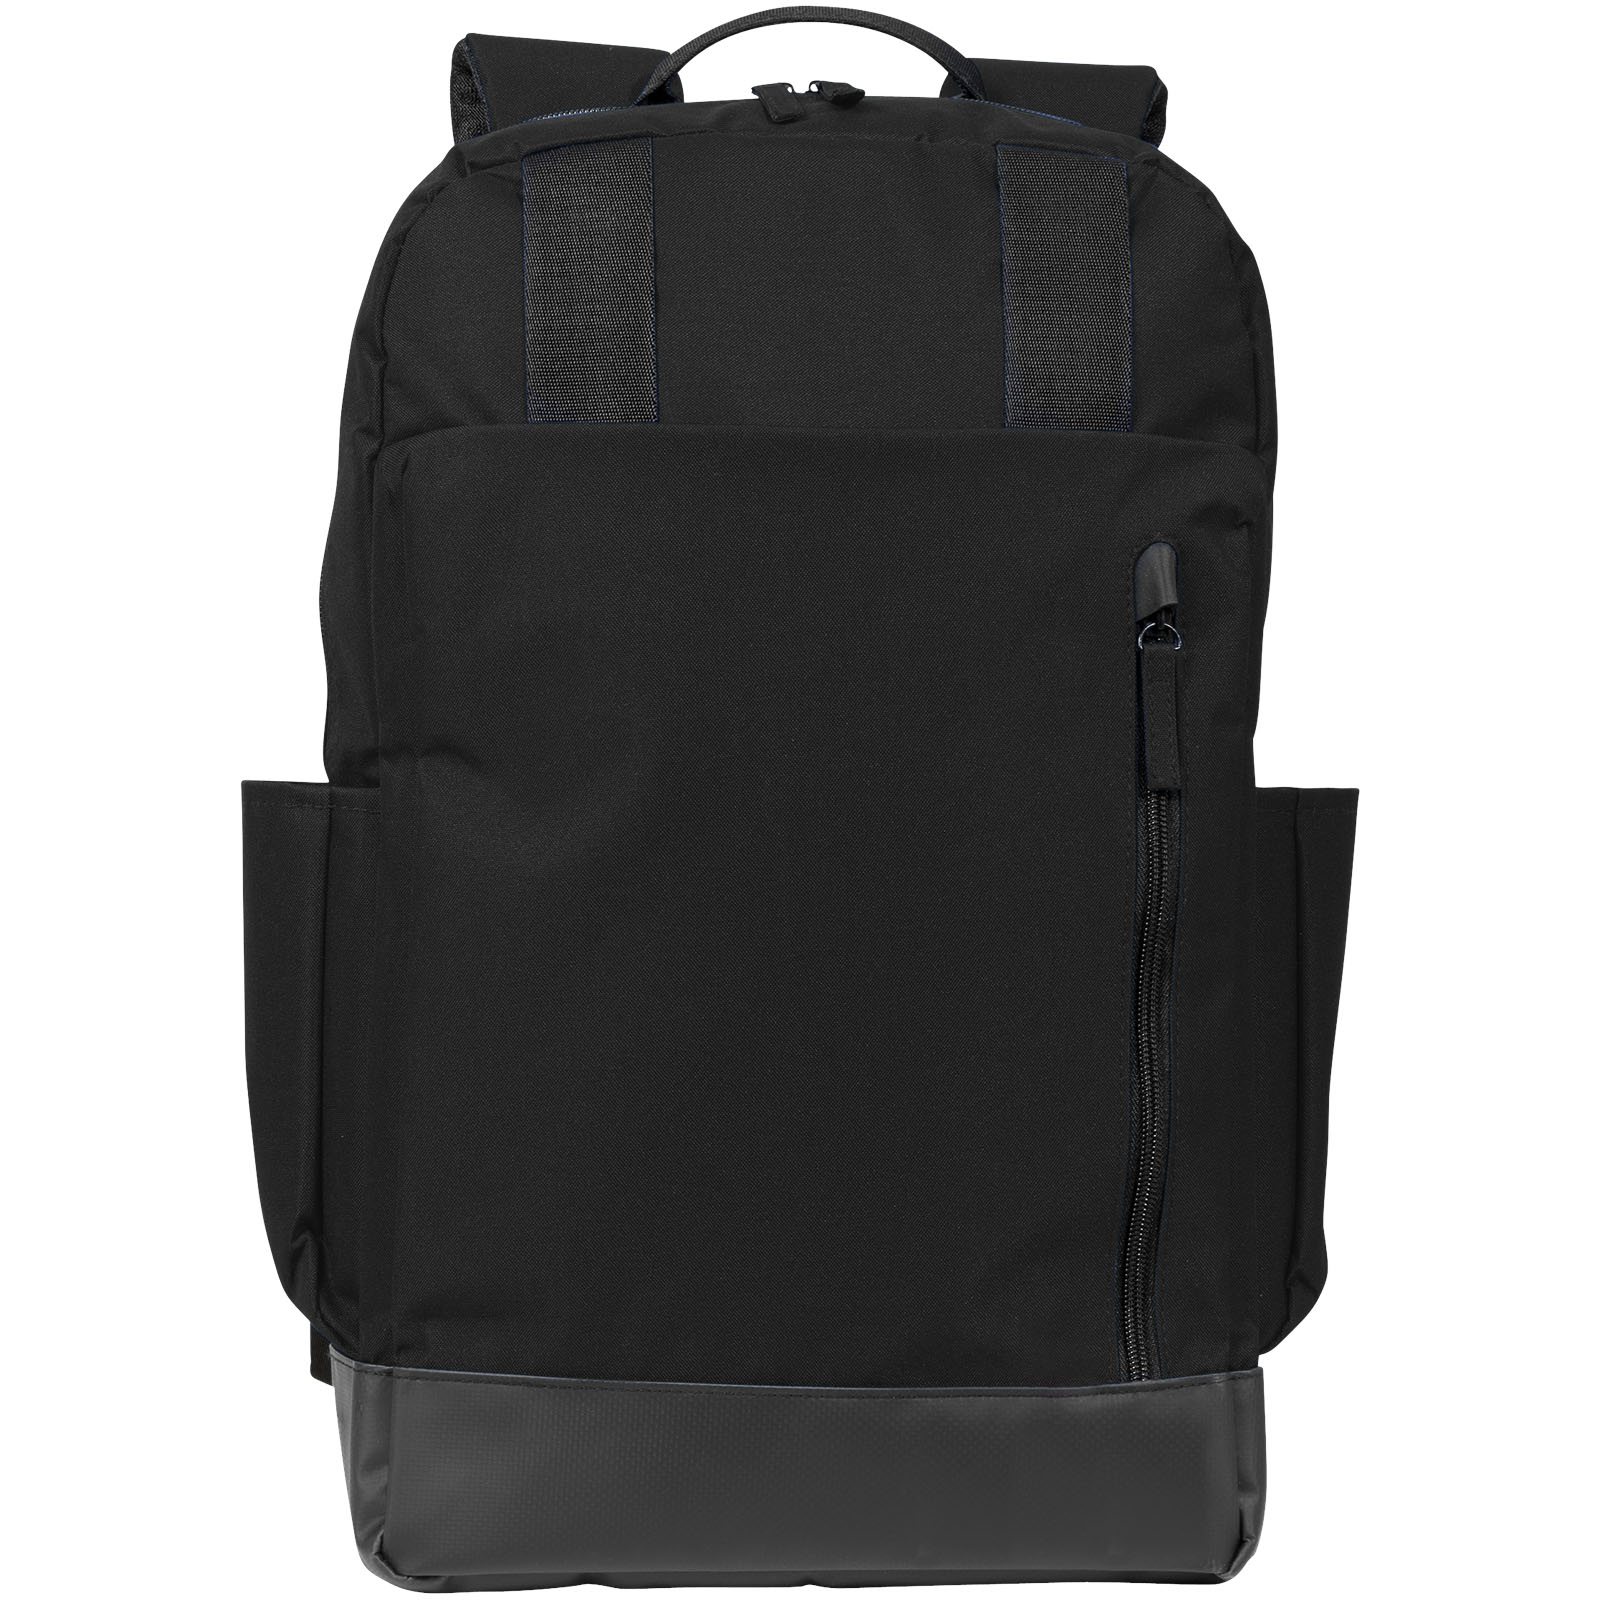 Advertising Laptop Backpacks - Compu 15.6